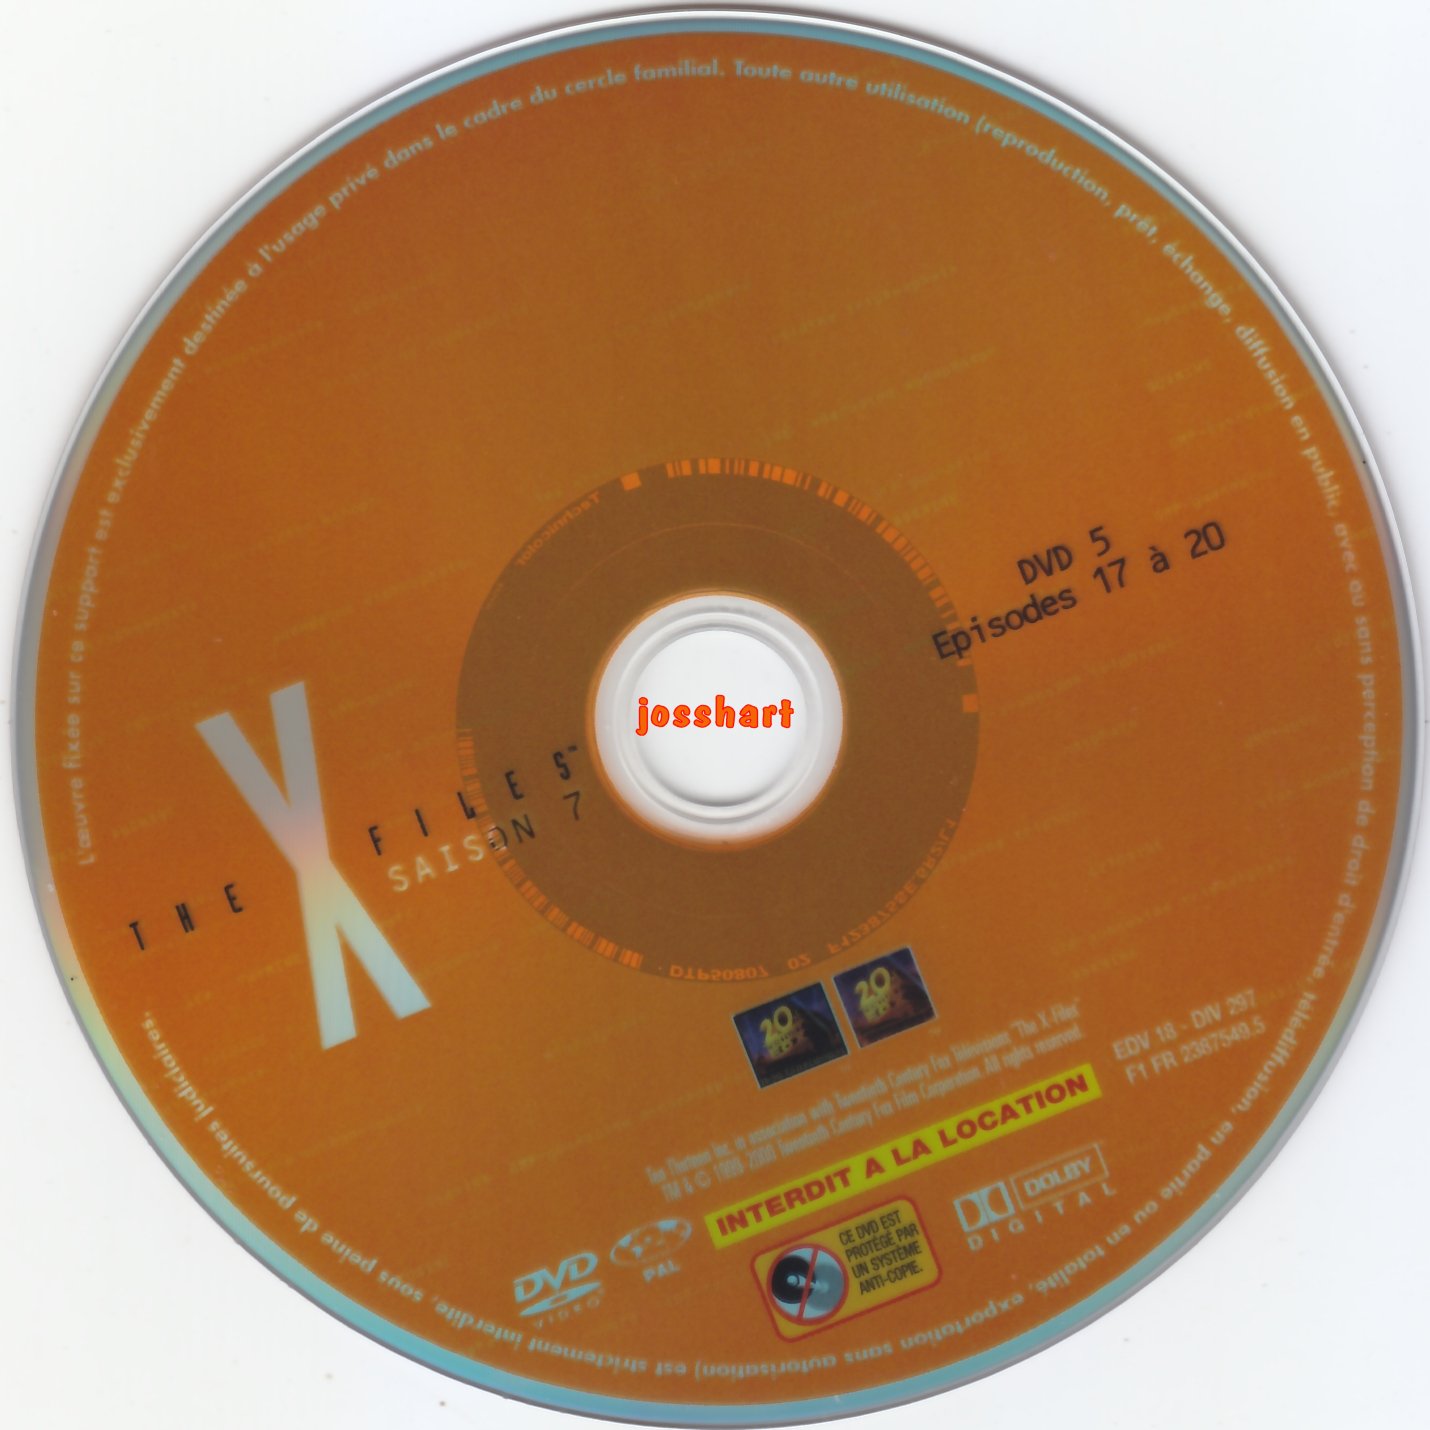 The X Files Saison 7 DVD 5 v2